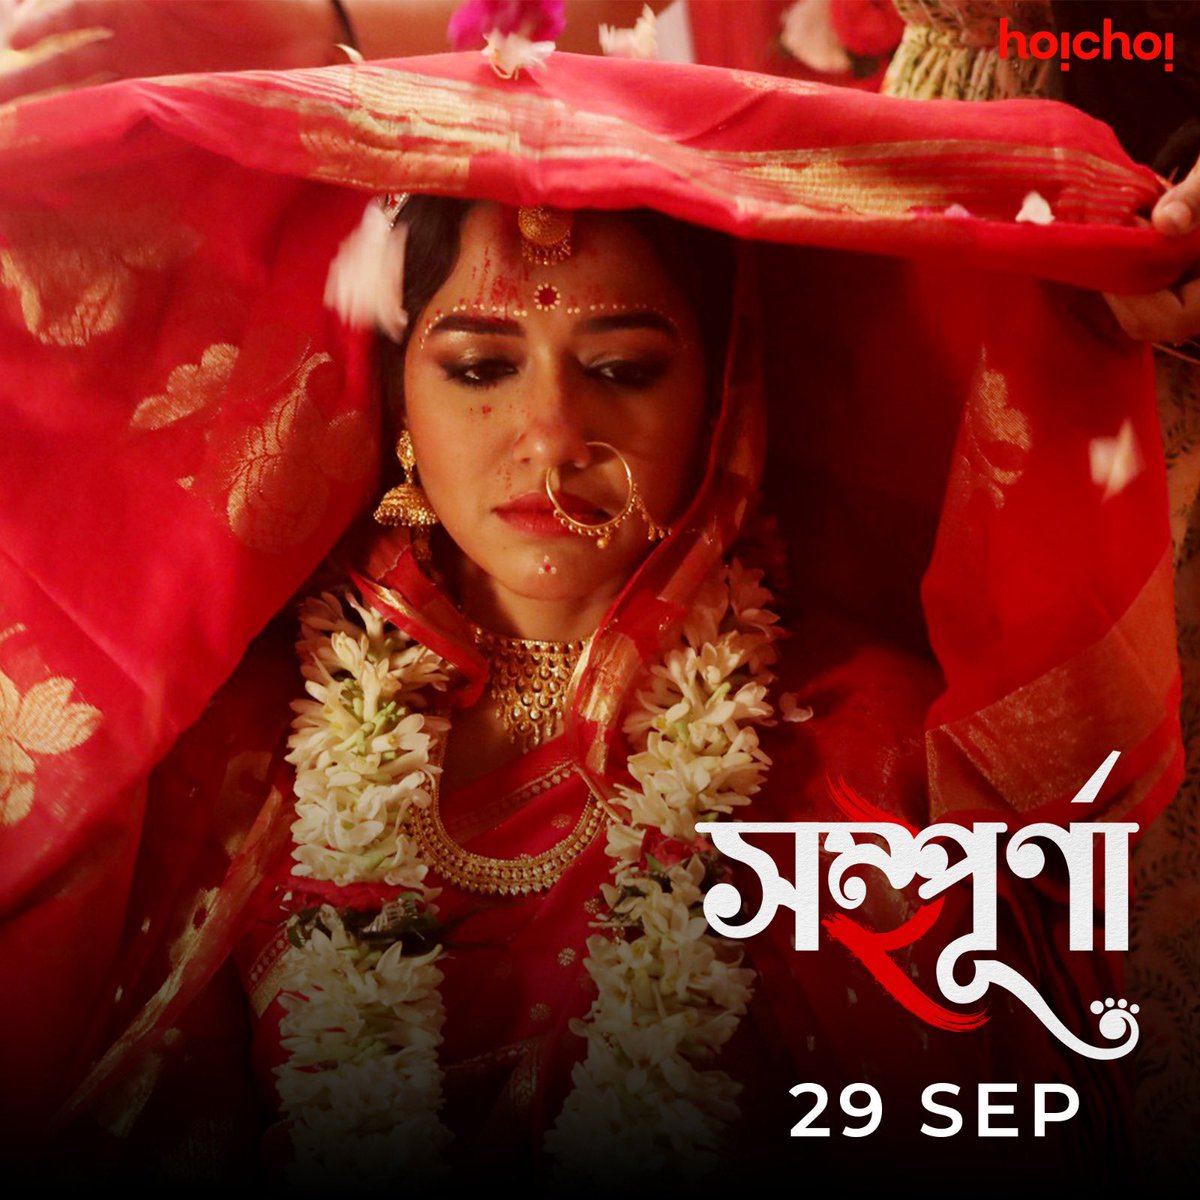 ফিরছে Sampurna! #Sampurna 2 directed by @sayantanghosal premieres on 29th September, only on #hoichoi. @sohinisarkar01 #RajnandiniPaul #FollowFocusFilms